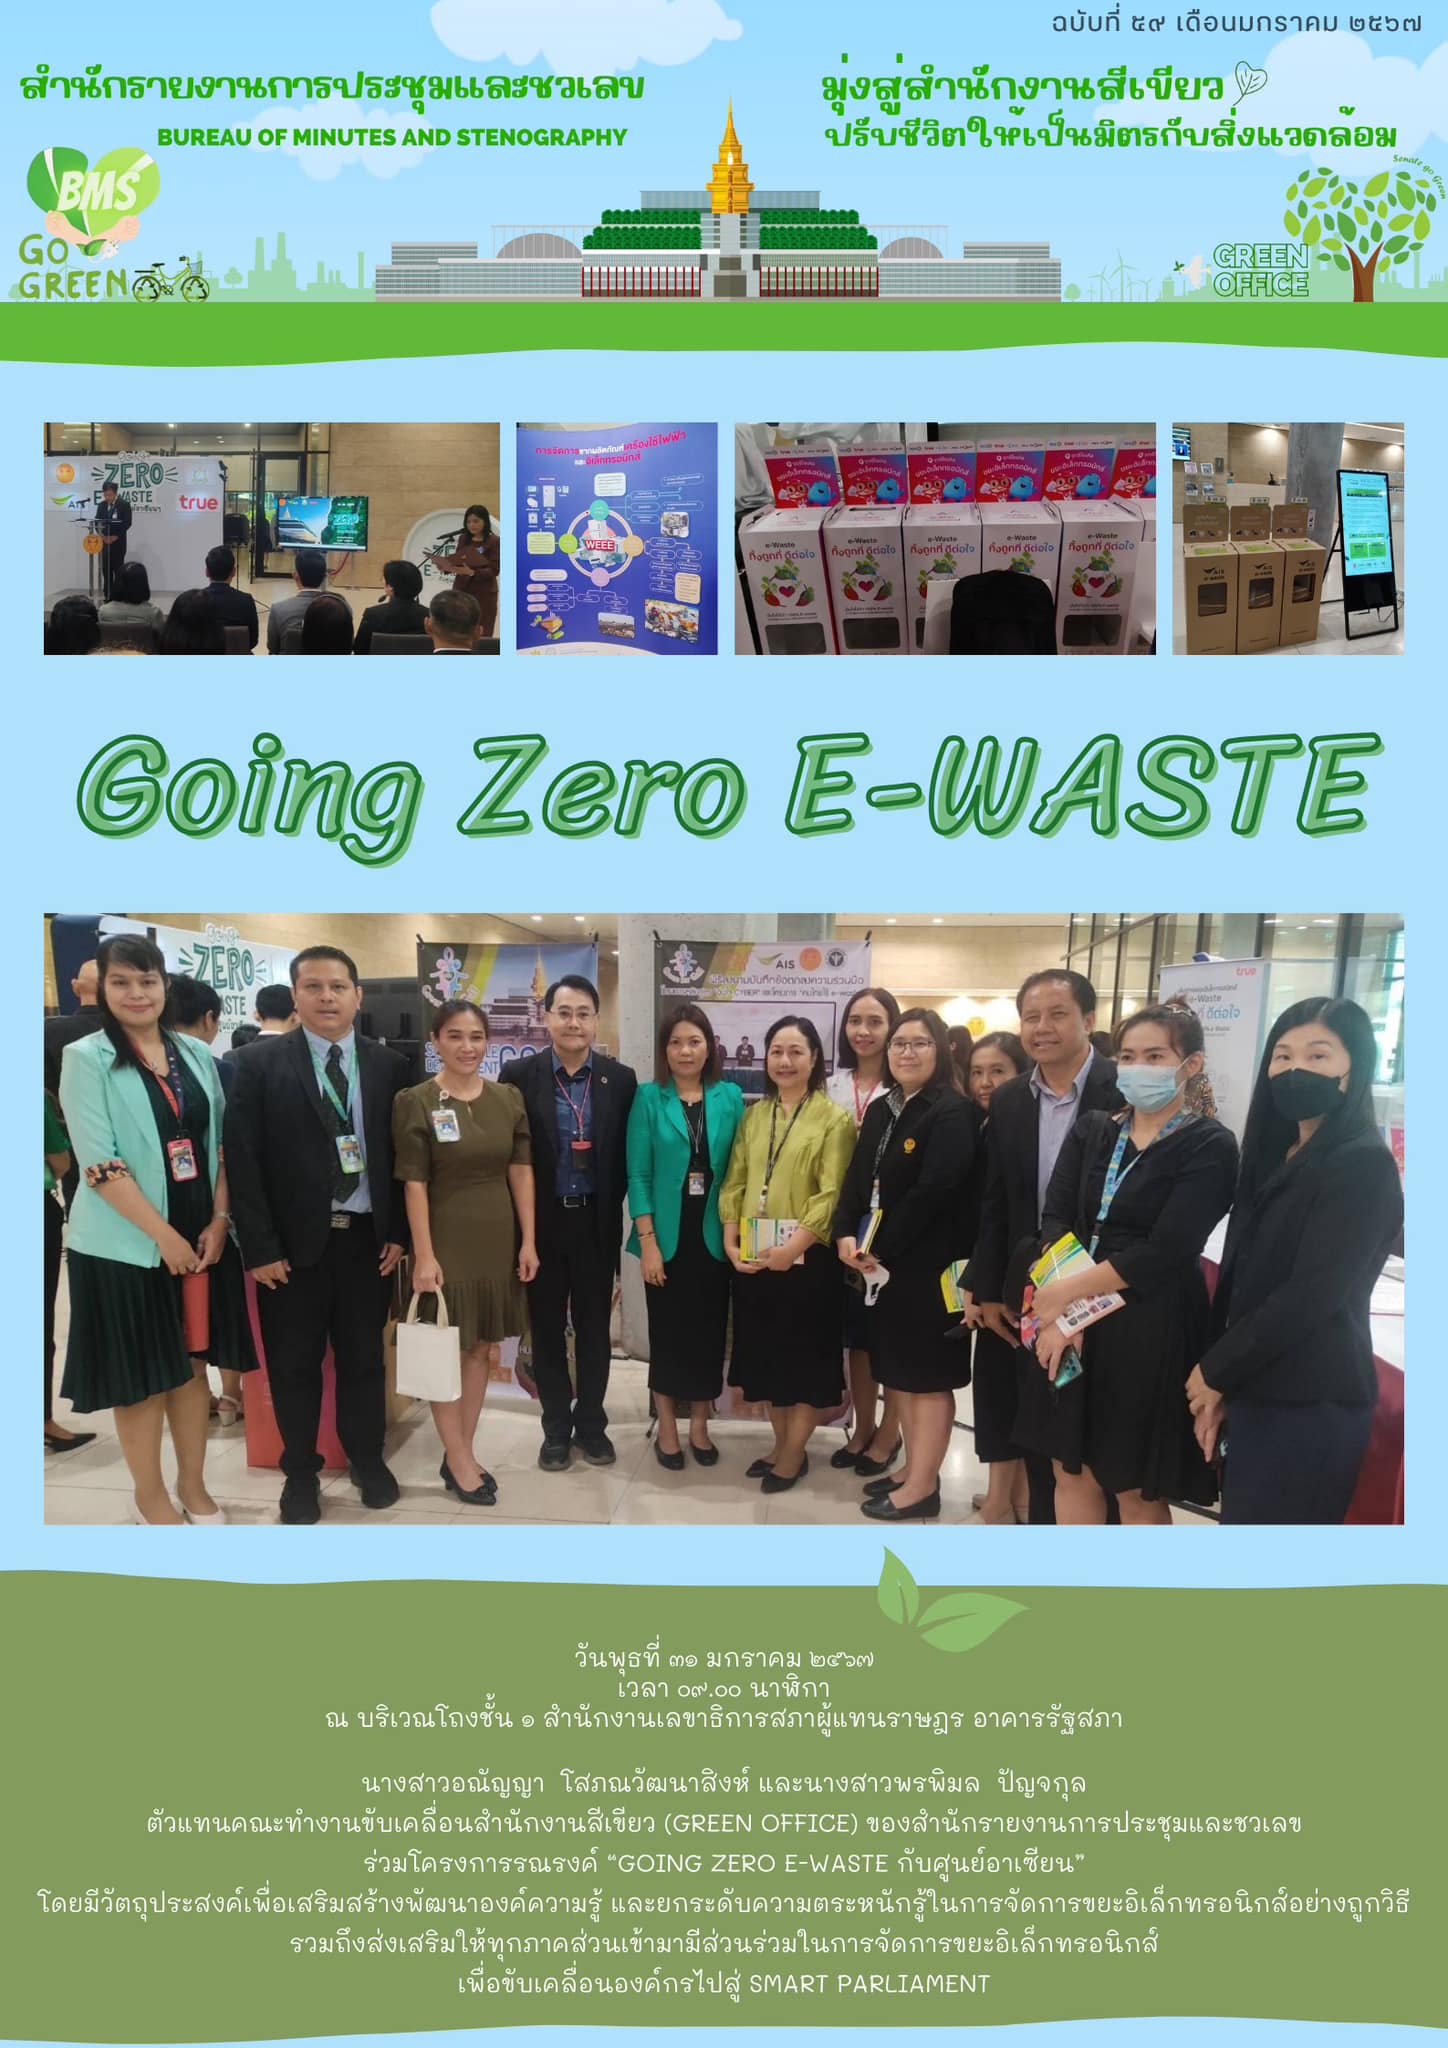 ตัวแทนคณะทำงานขับเคลื่อนสำนักงานสีเขียว (Green office) ของสำนักรายงานการประชุมและชวเลข ร่วมโครงการรณรงค์ “Going Zero E-WASTE กับศูนย์อาเซียน”